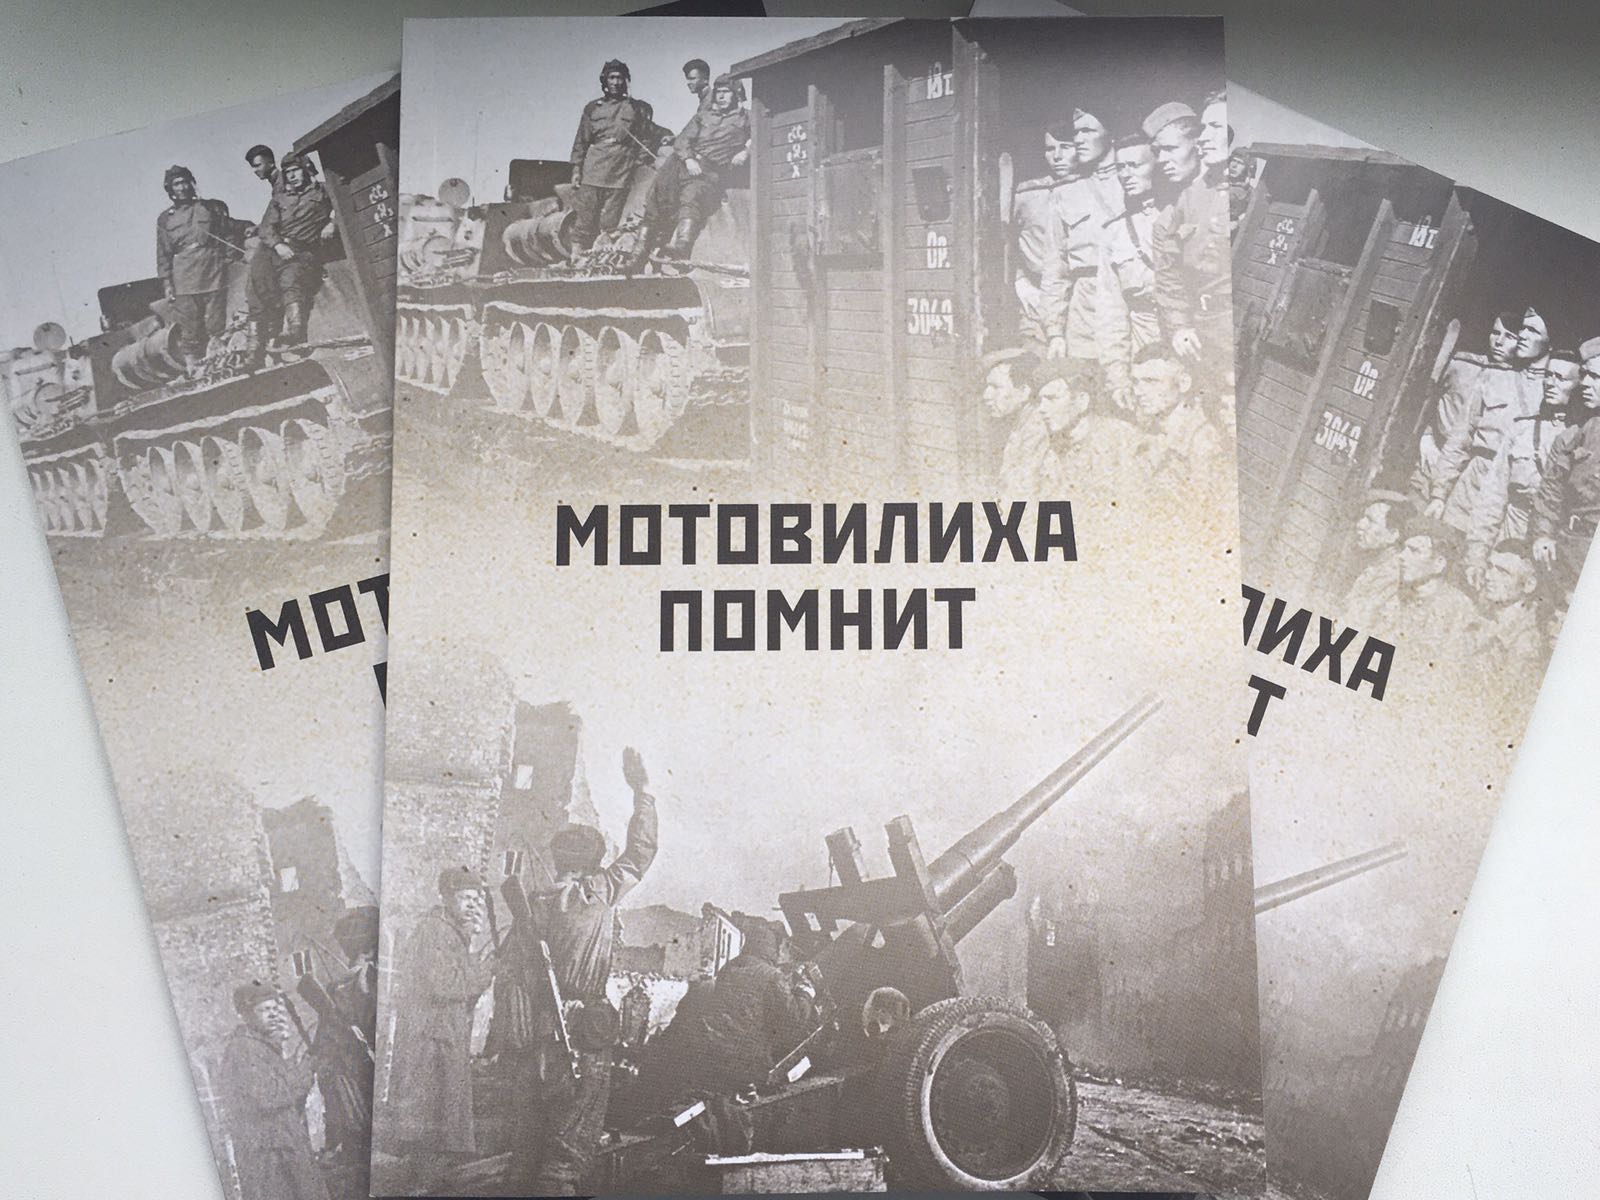 В Перми вышел сборник воспоминаний о Великой Отечественной войне «Мотовилиха помнит»